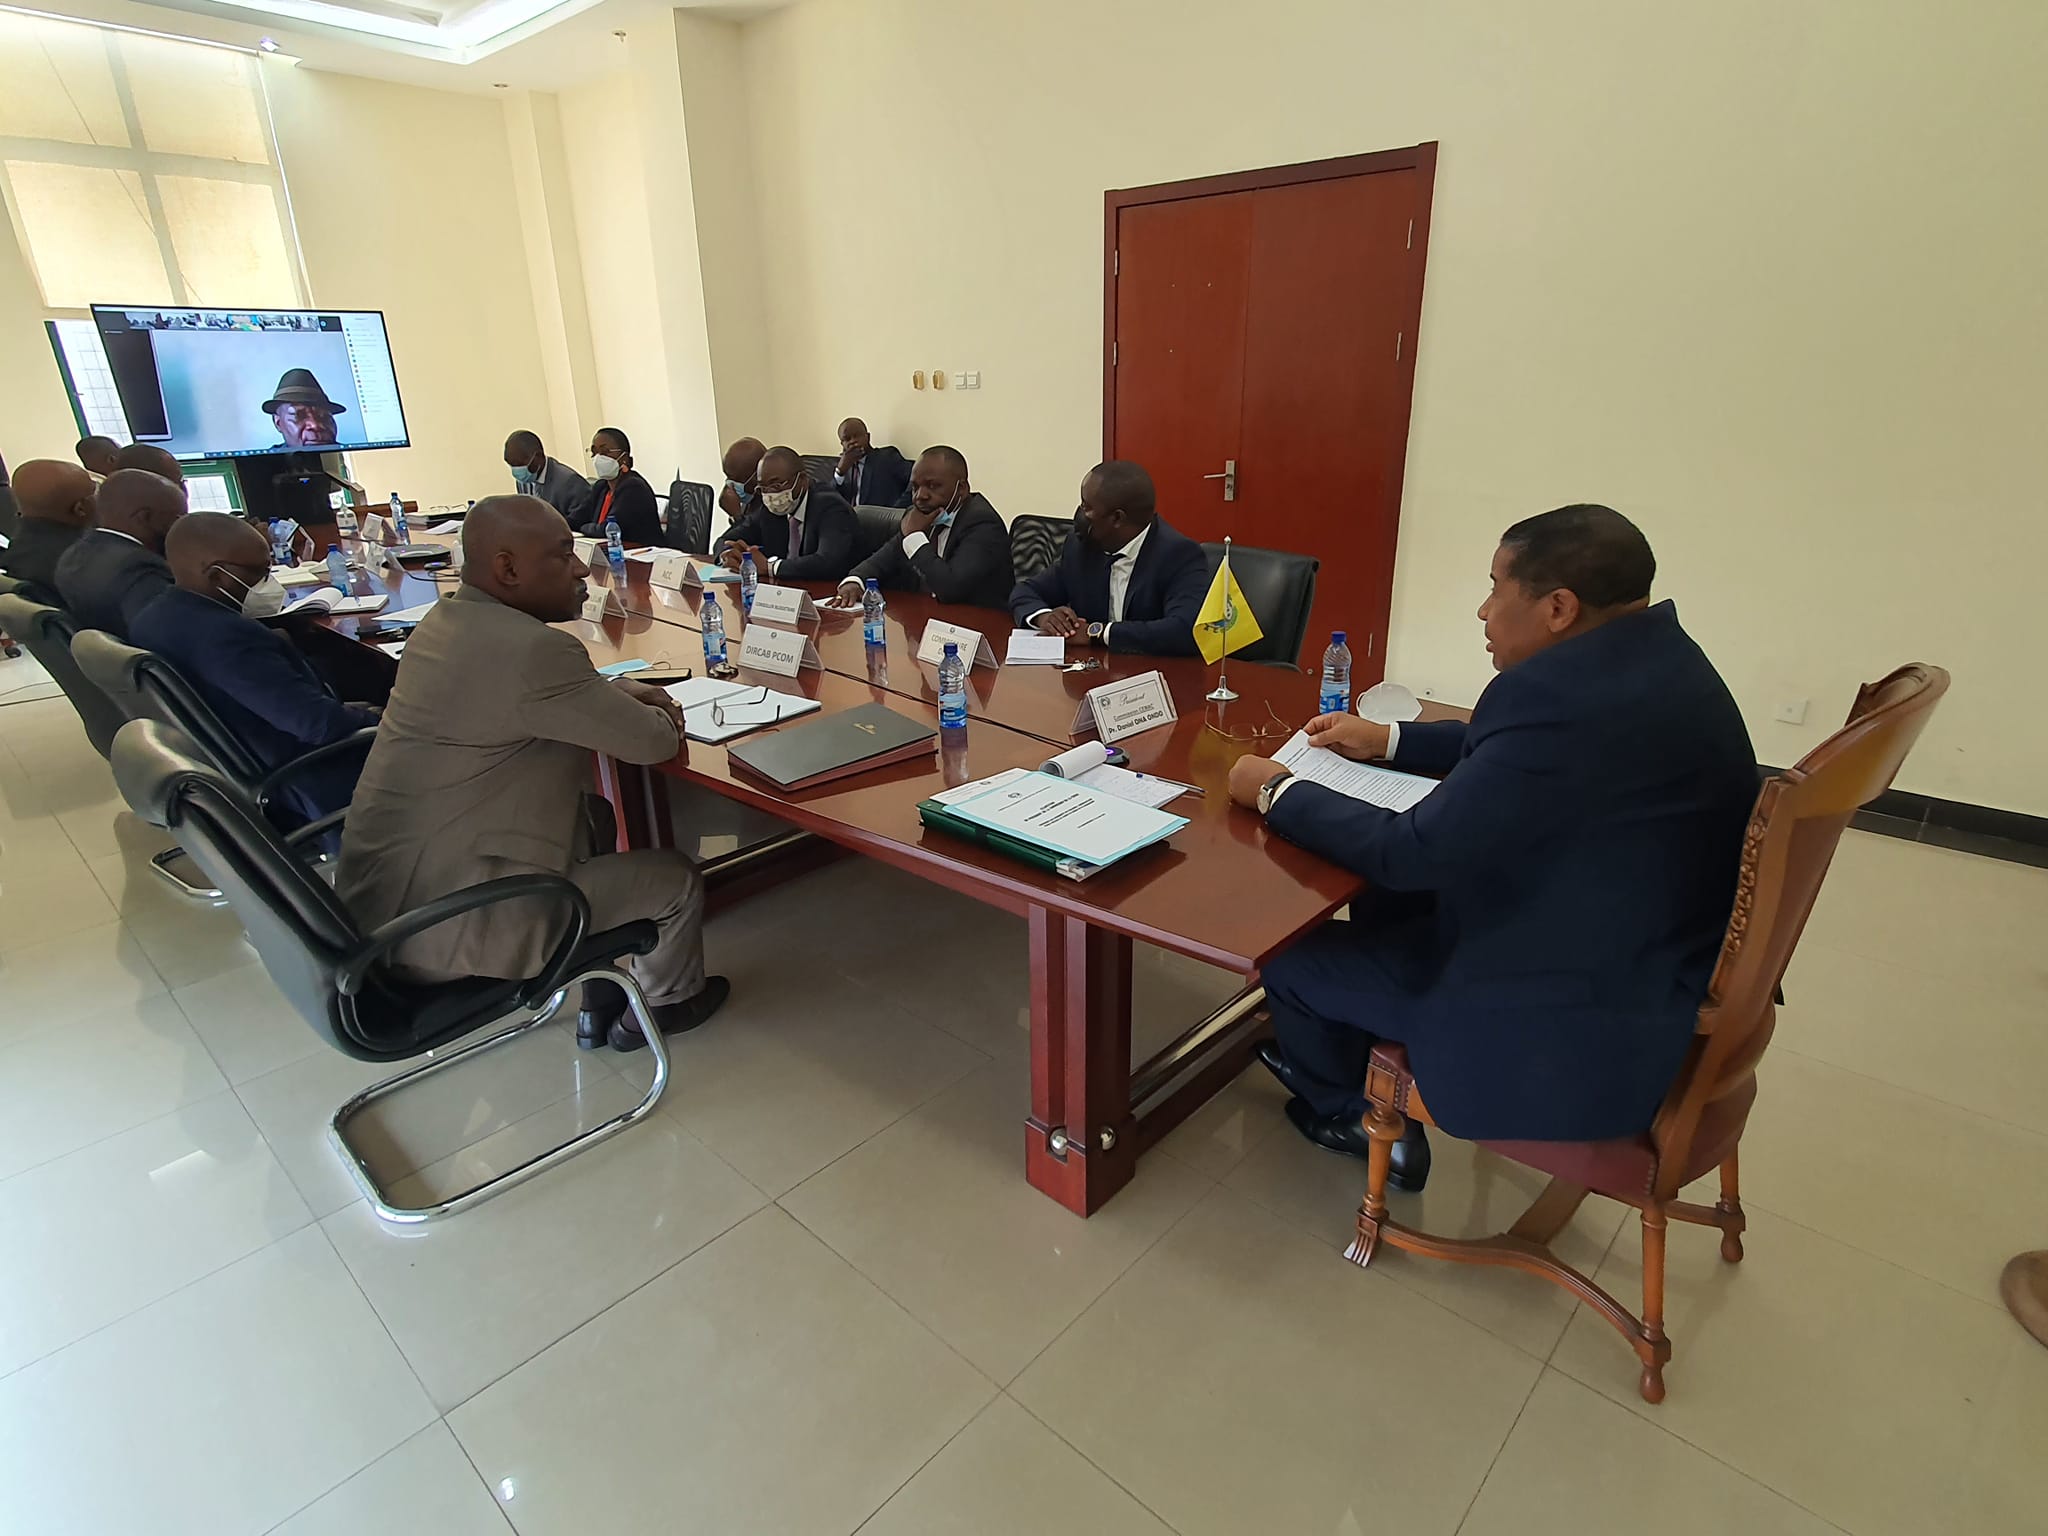 La séance officielle de remise du budget de la Communauté a eu lieu le 04 mars dernier, au cours de la conférence des Présidents du Parlement communautaire tenue par visioconférence.